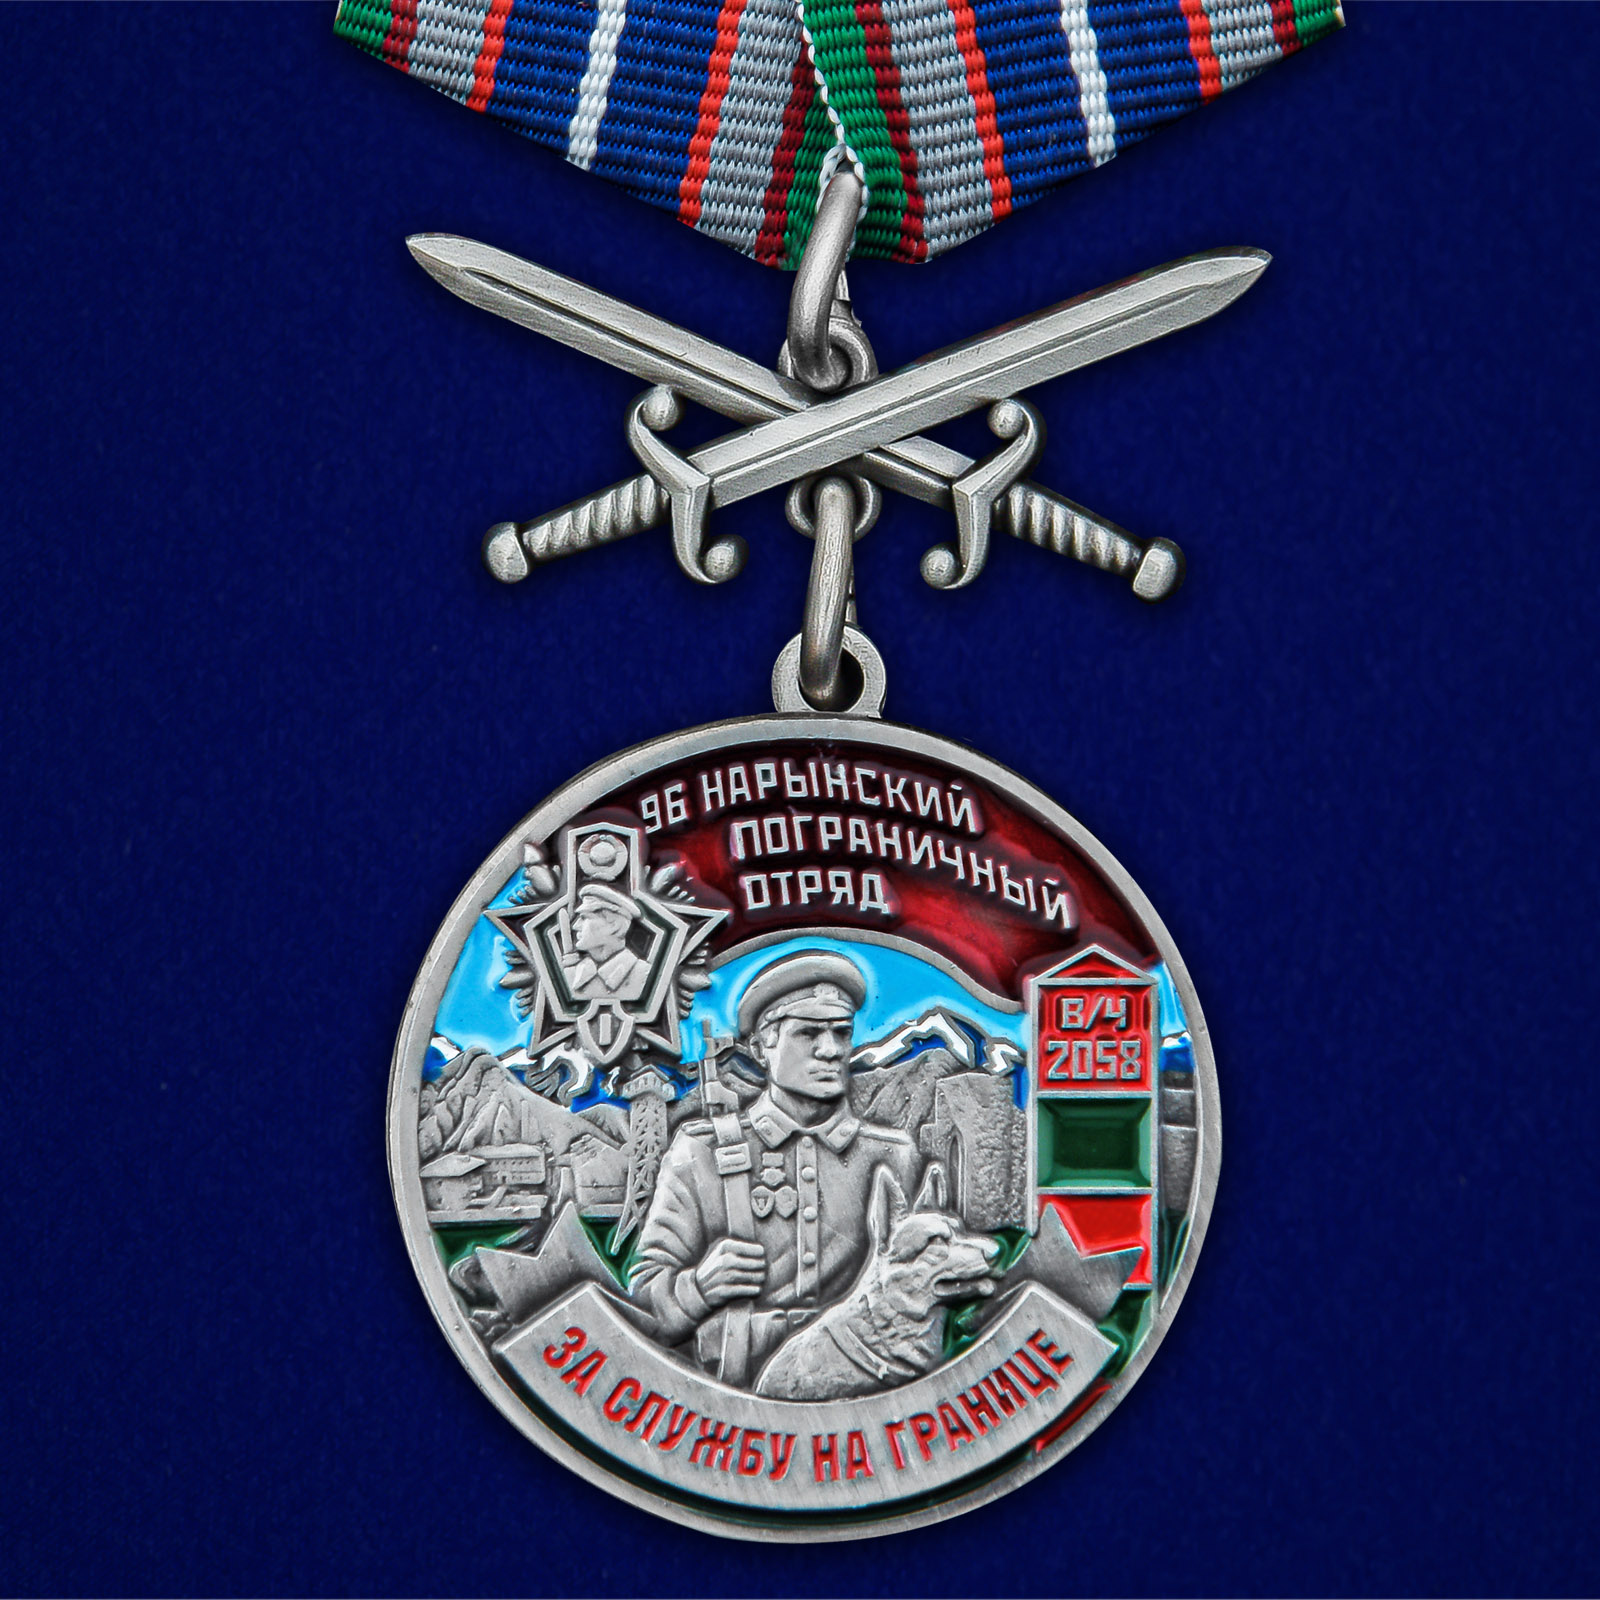 Купить медаль За службу в Нарынском пограничном отряде с мечами онлайн